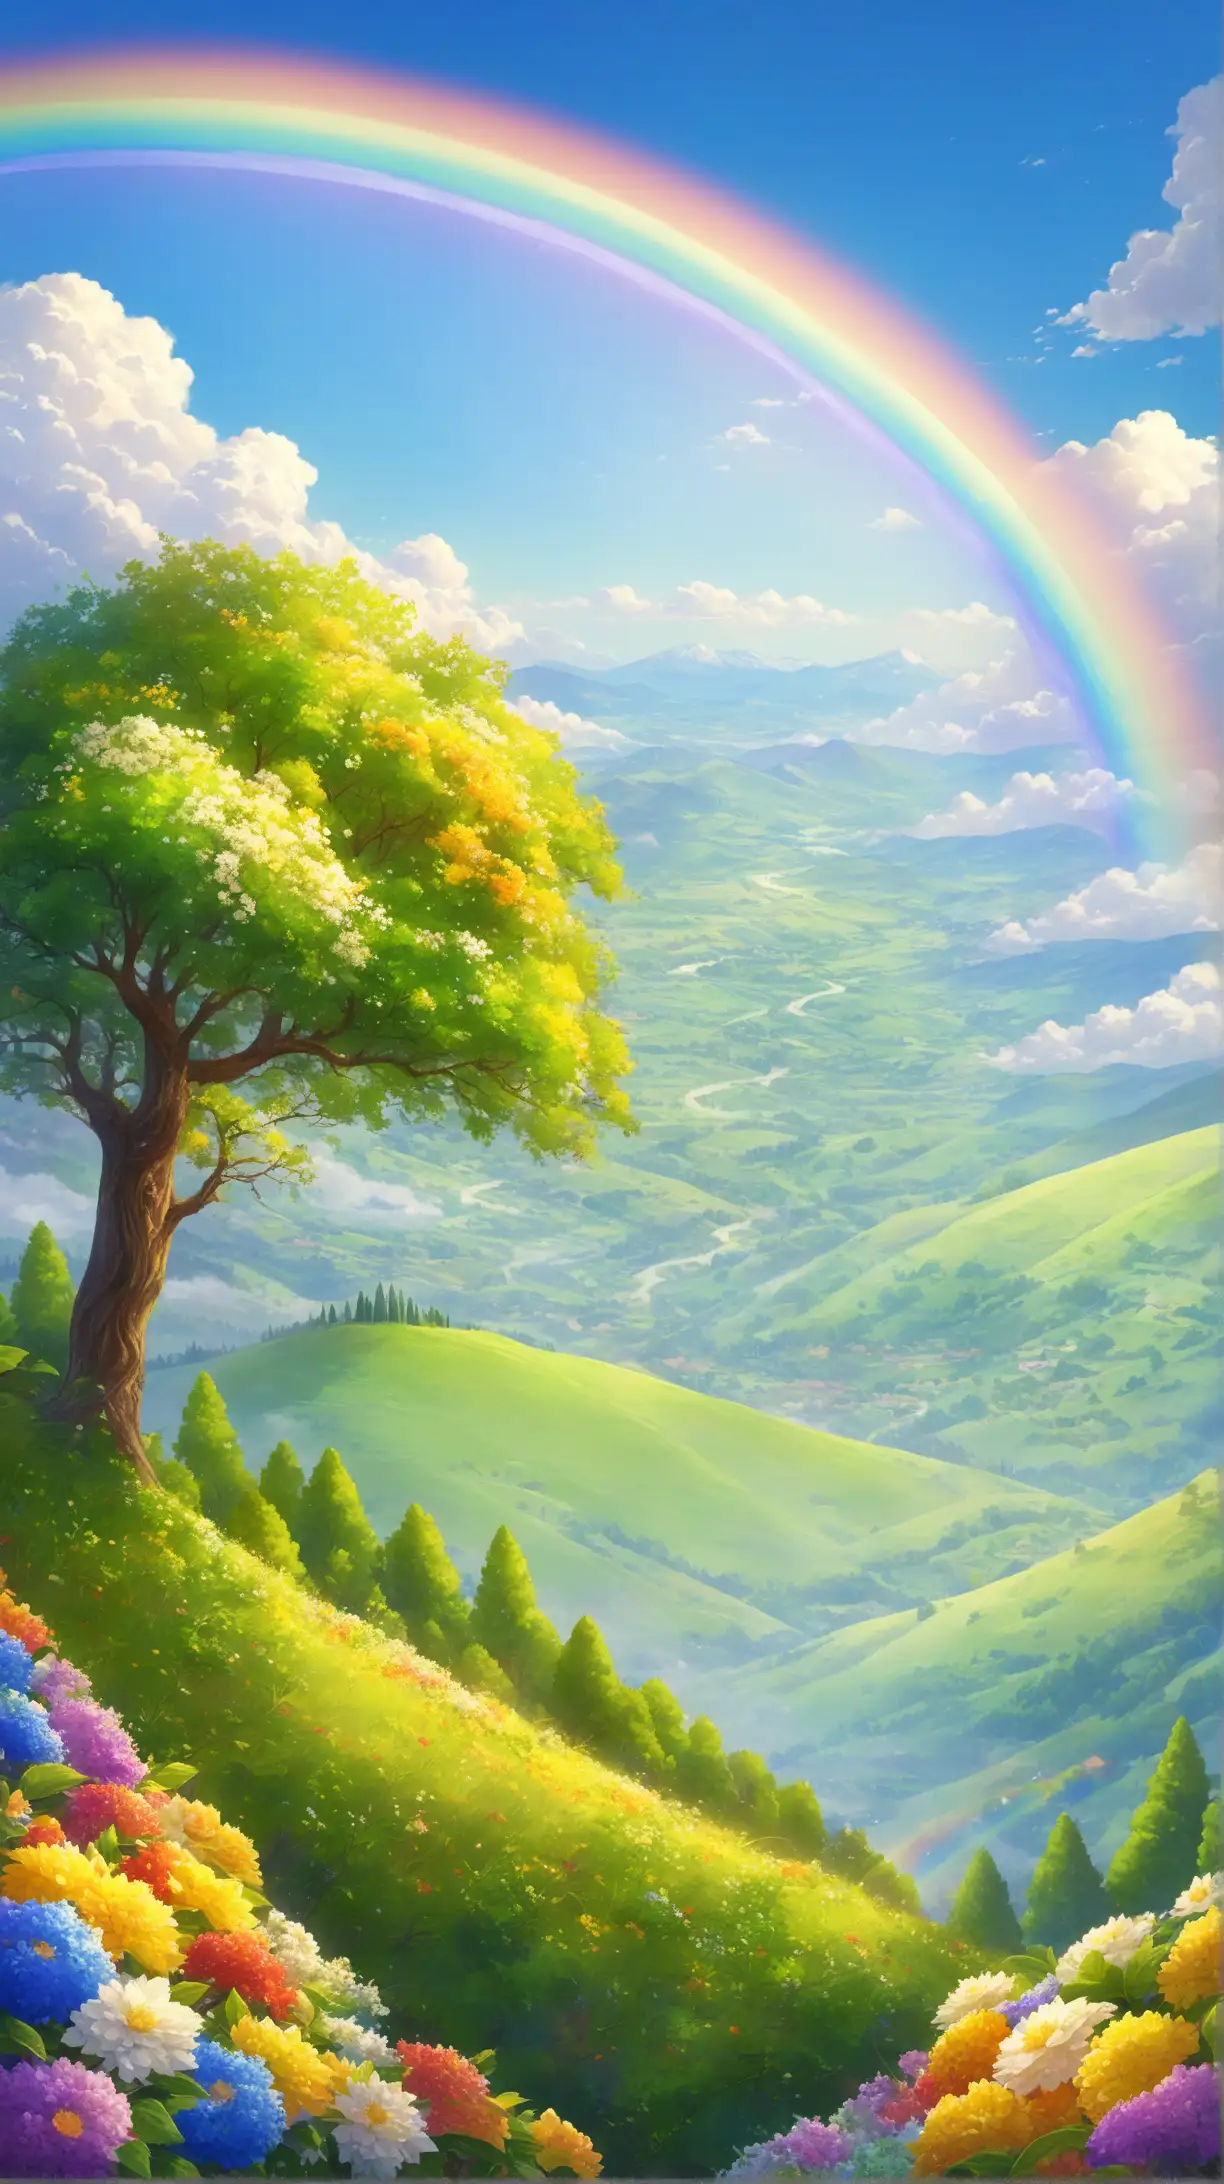 蓝天白云,一道彩虹，绿色的远山，树叶挂满枝头，山坡满满金色的阳光，两边绿地上开满大朵的鲜花